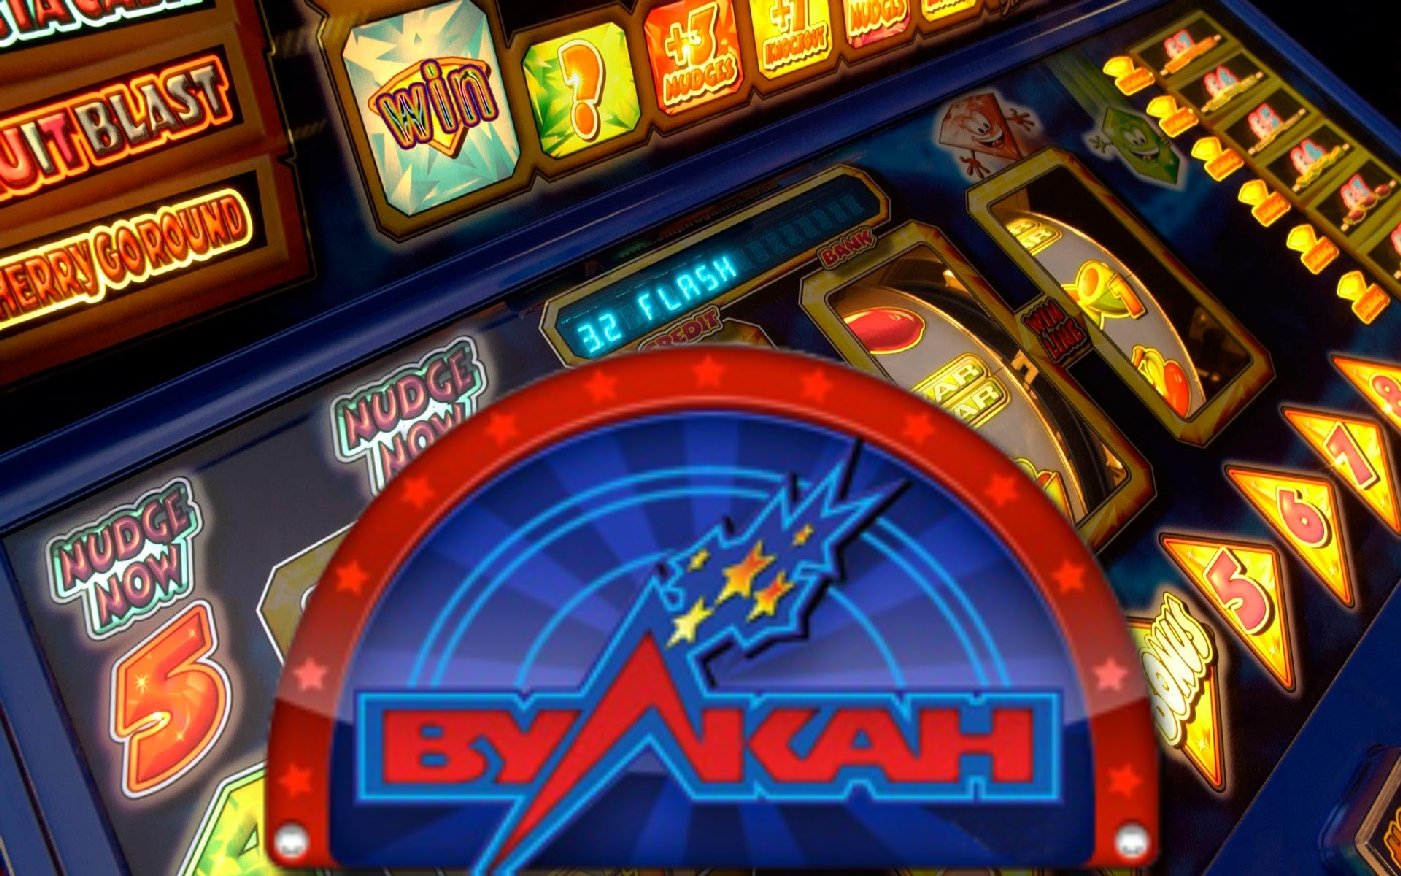 Казино вулкан club vulkan casino online игровые игровые автоматы играть бесплатно